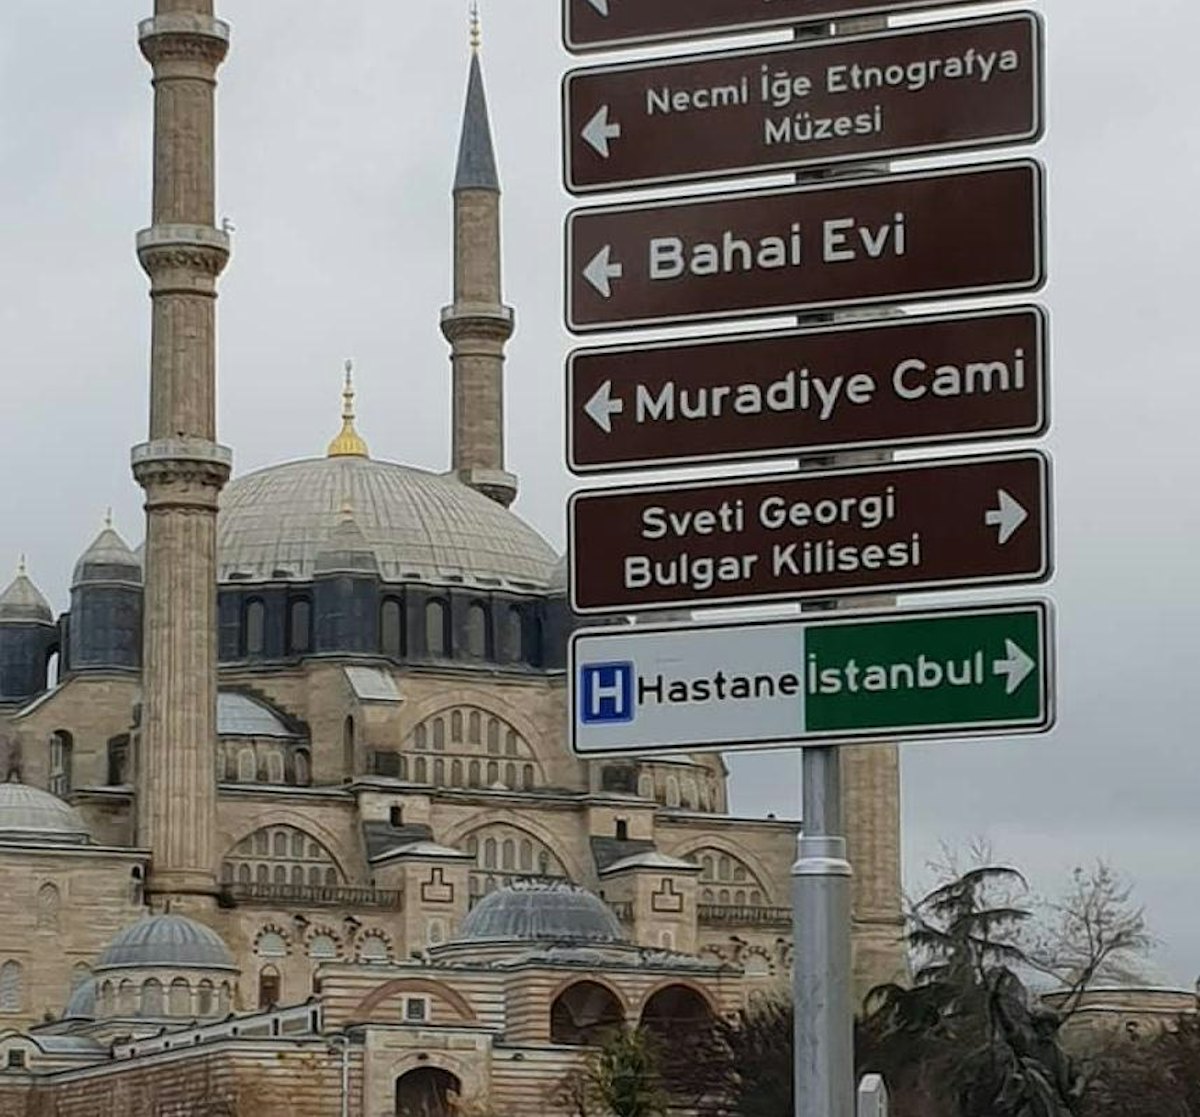 A number of signs labelled “Bahá’í House” mark the location of a house in Edirne where Bahá’u’lláh, ‘Abdu’l-Bahá, and their families lived as exiles.